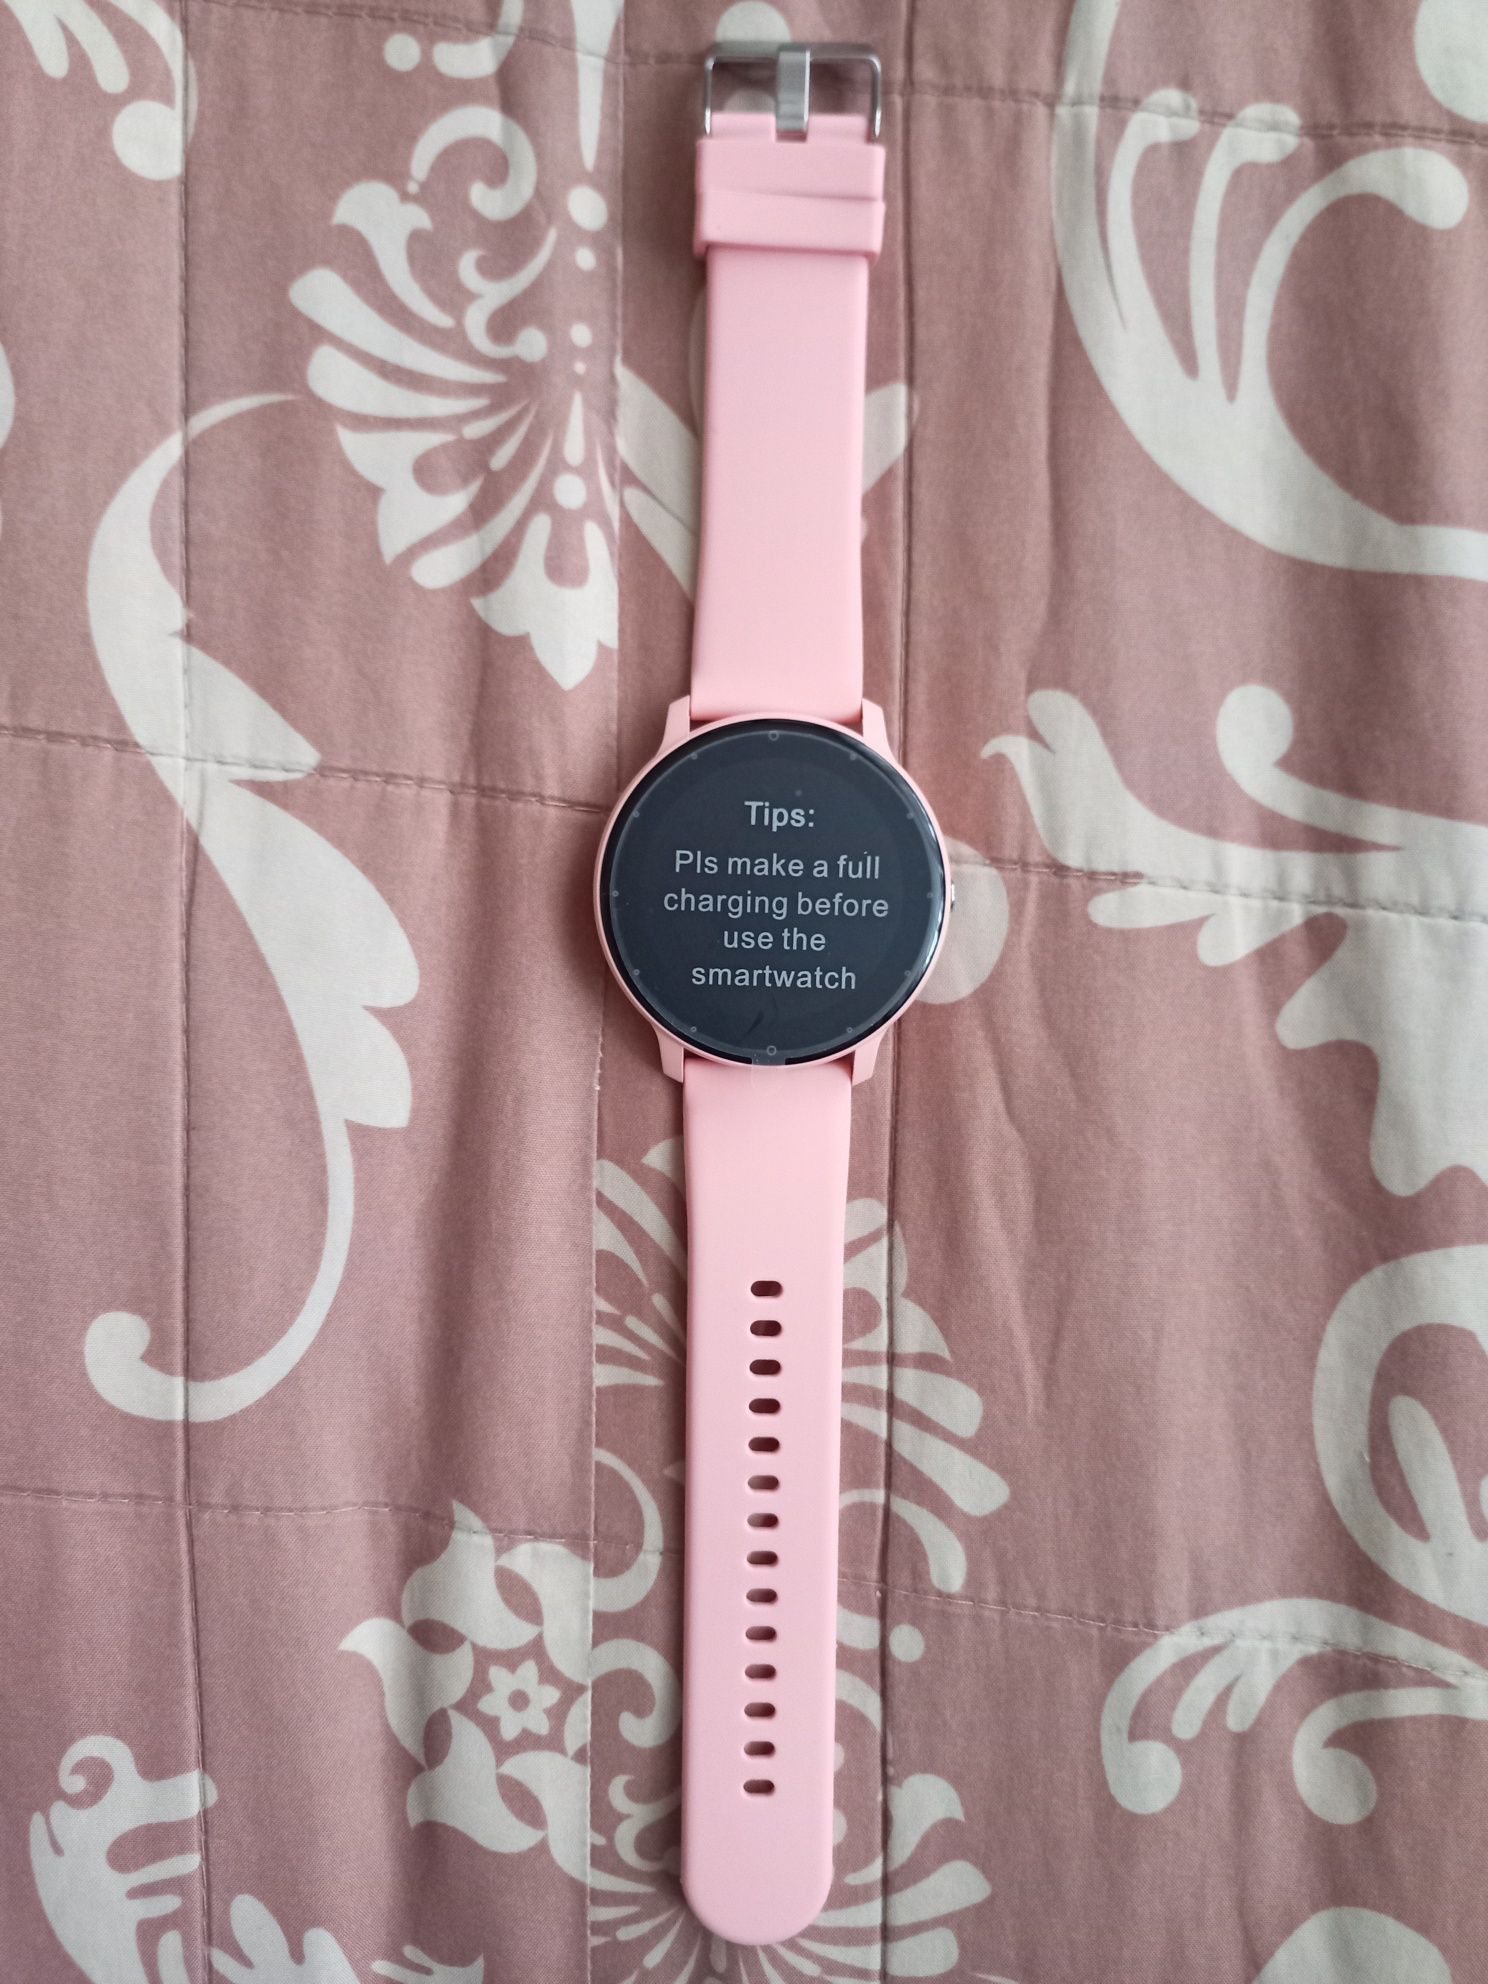 NOWY Smartwach zegarek dwa kolory Różowy lub Czarny